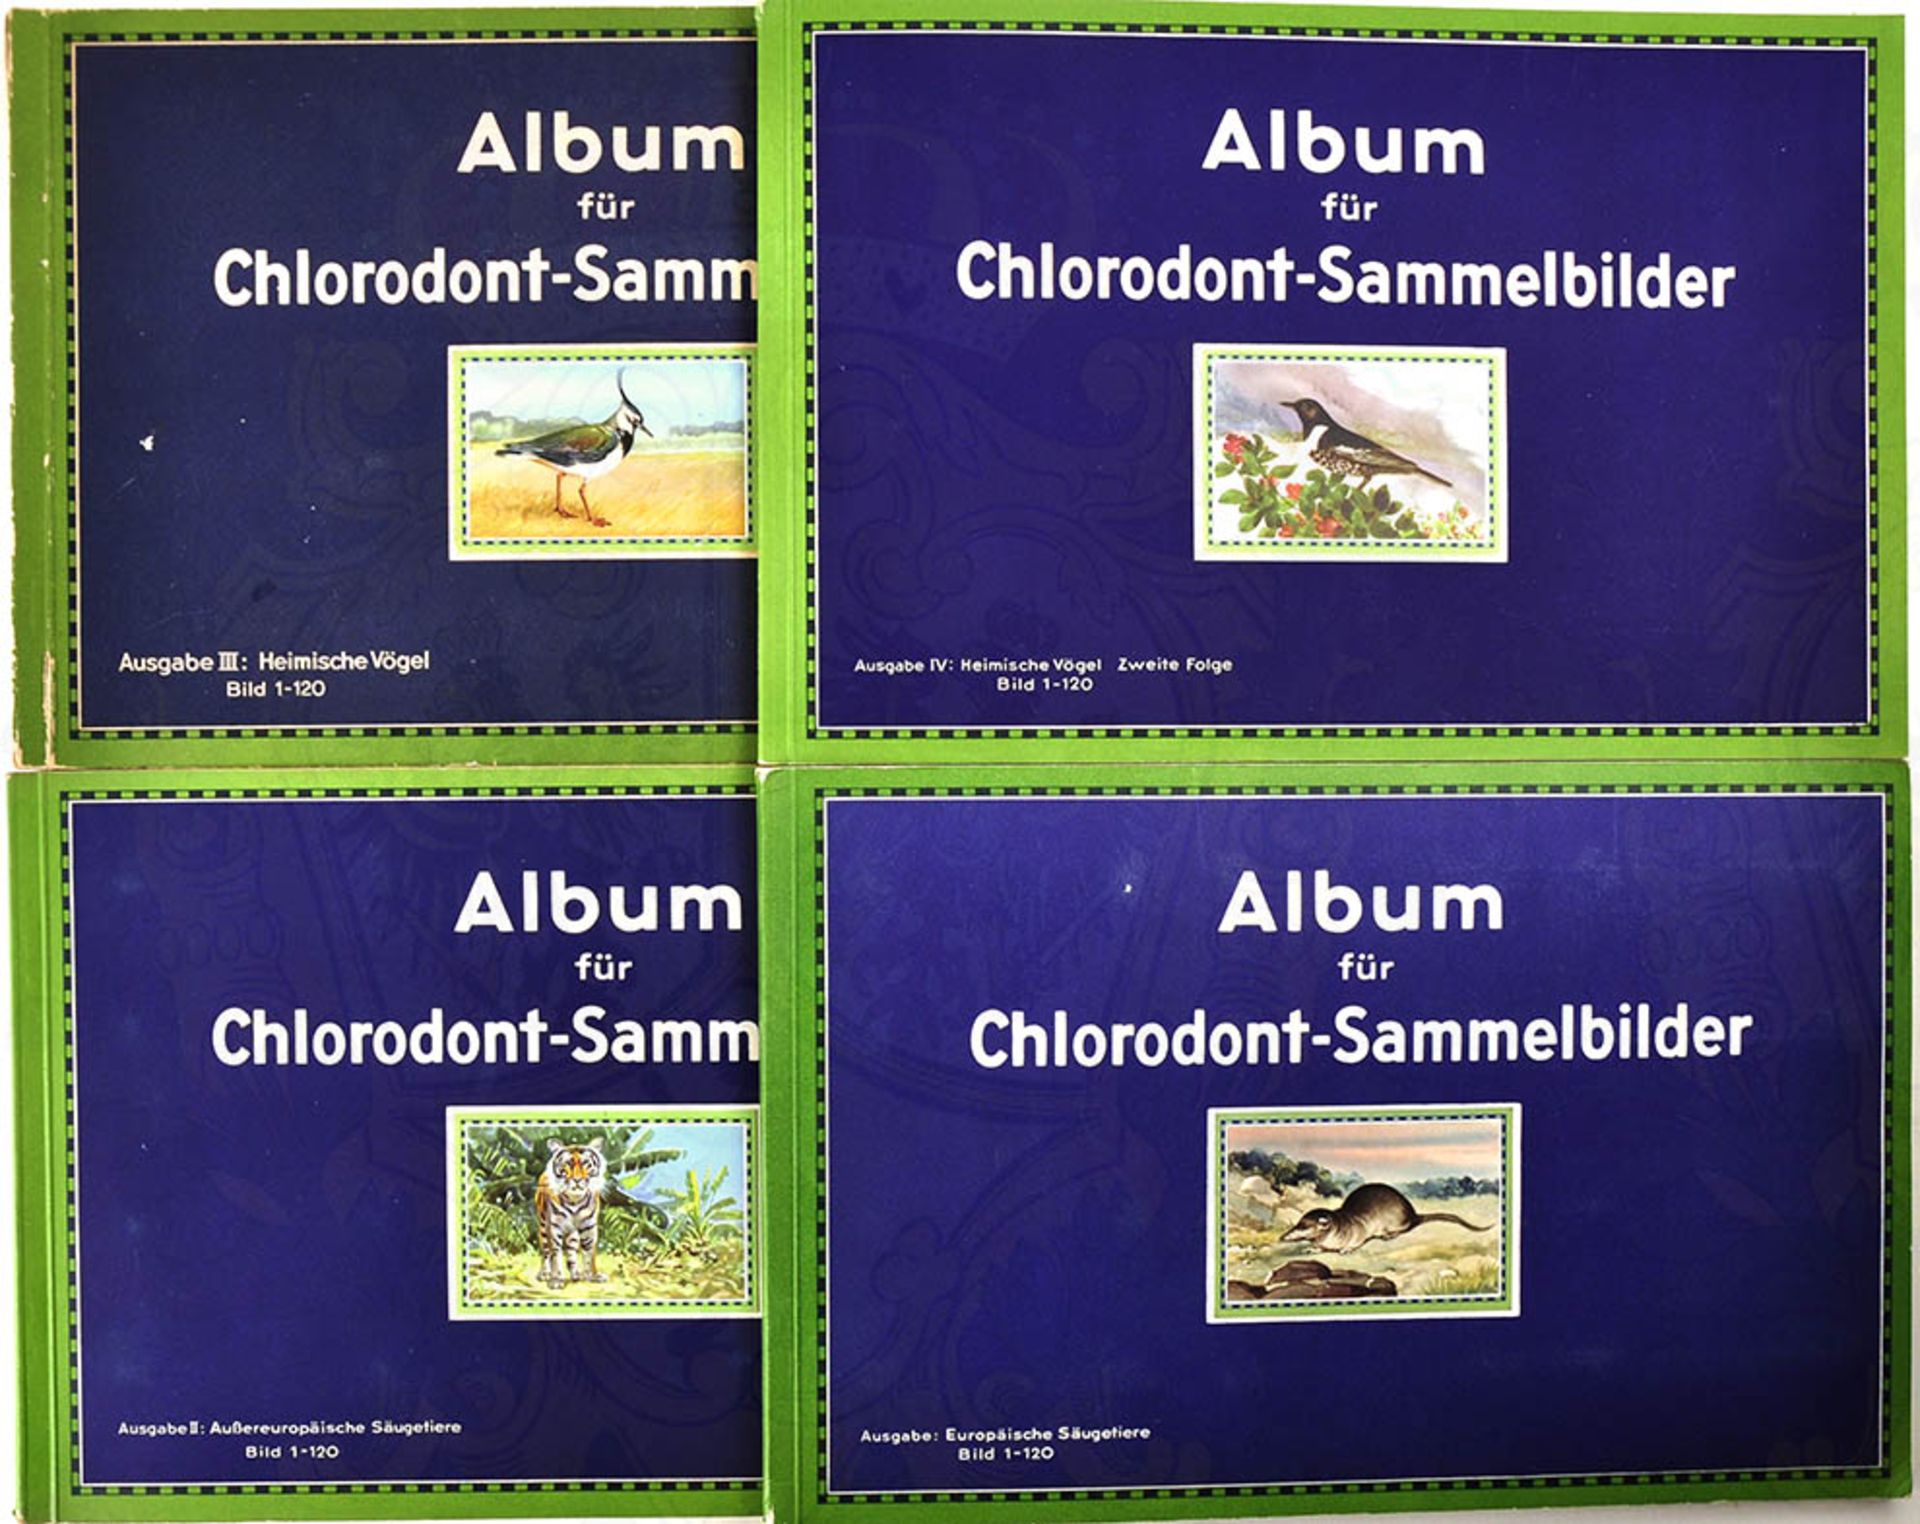 ALBUM FÜR CHLORODONT-SAMMELBILDER, Bände 1-4: Europäische bzw. Außereuropäische Säugetiere,